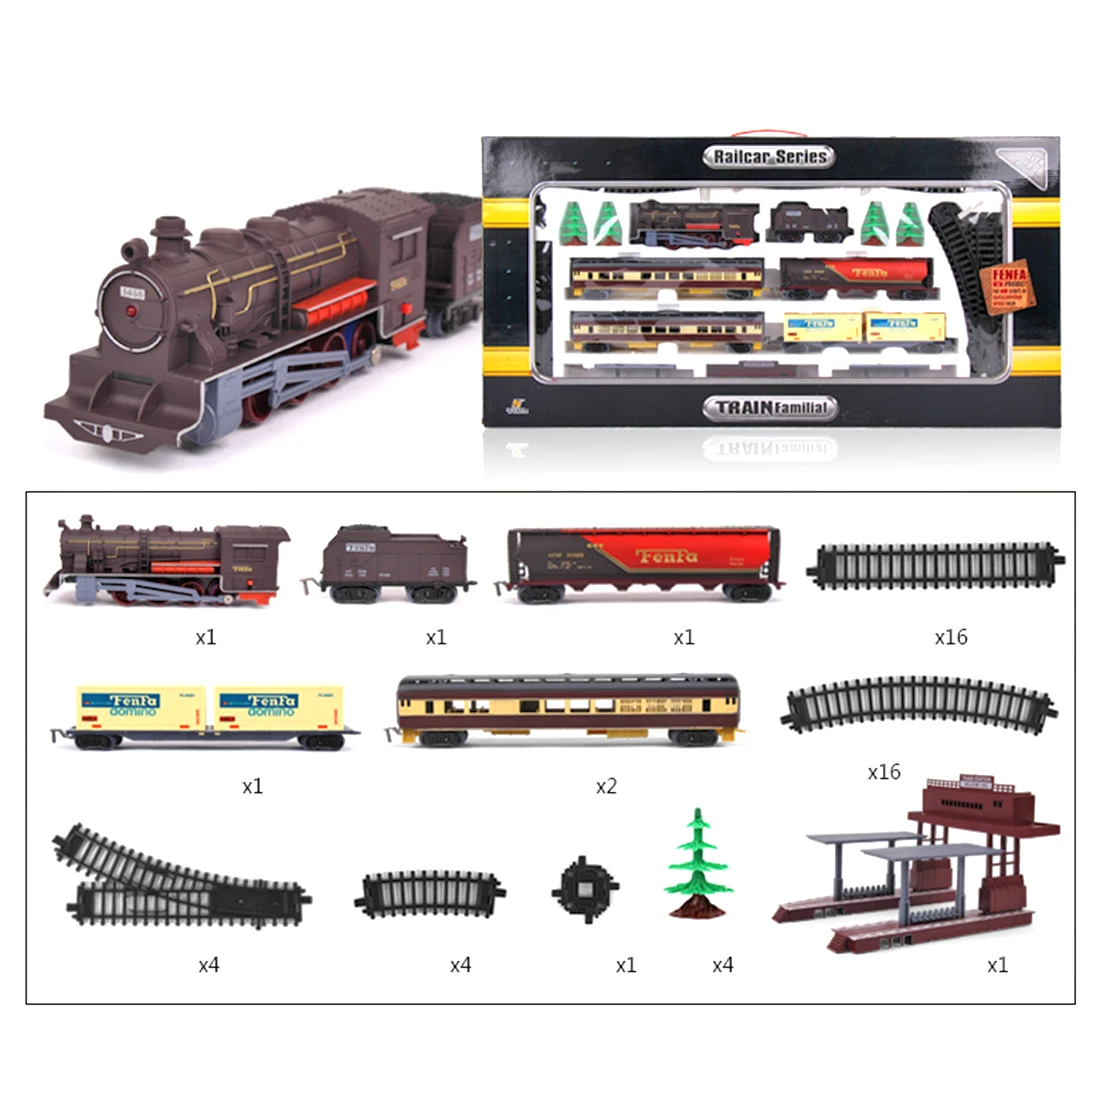 NFSTRIKE 1: 87 дети Электрический симулятор поезд трек Модель игрушка набор песок стол сцены Железнодорожные серии-базовая версия XL